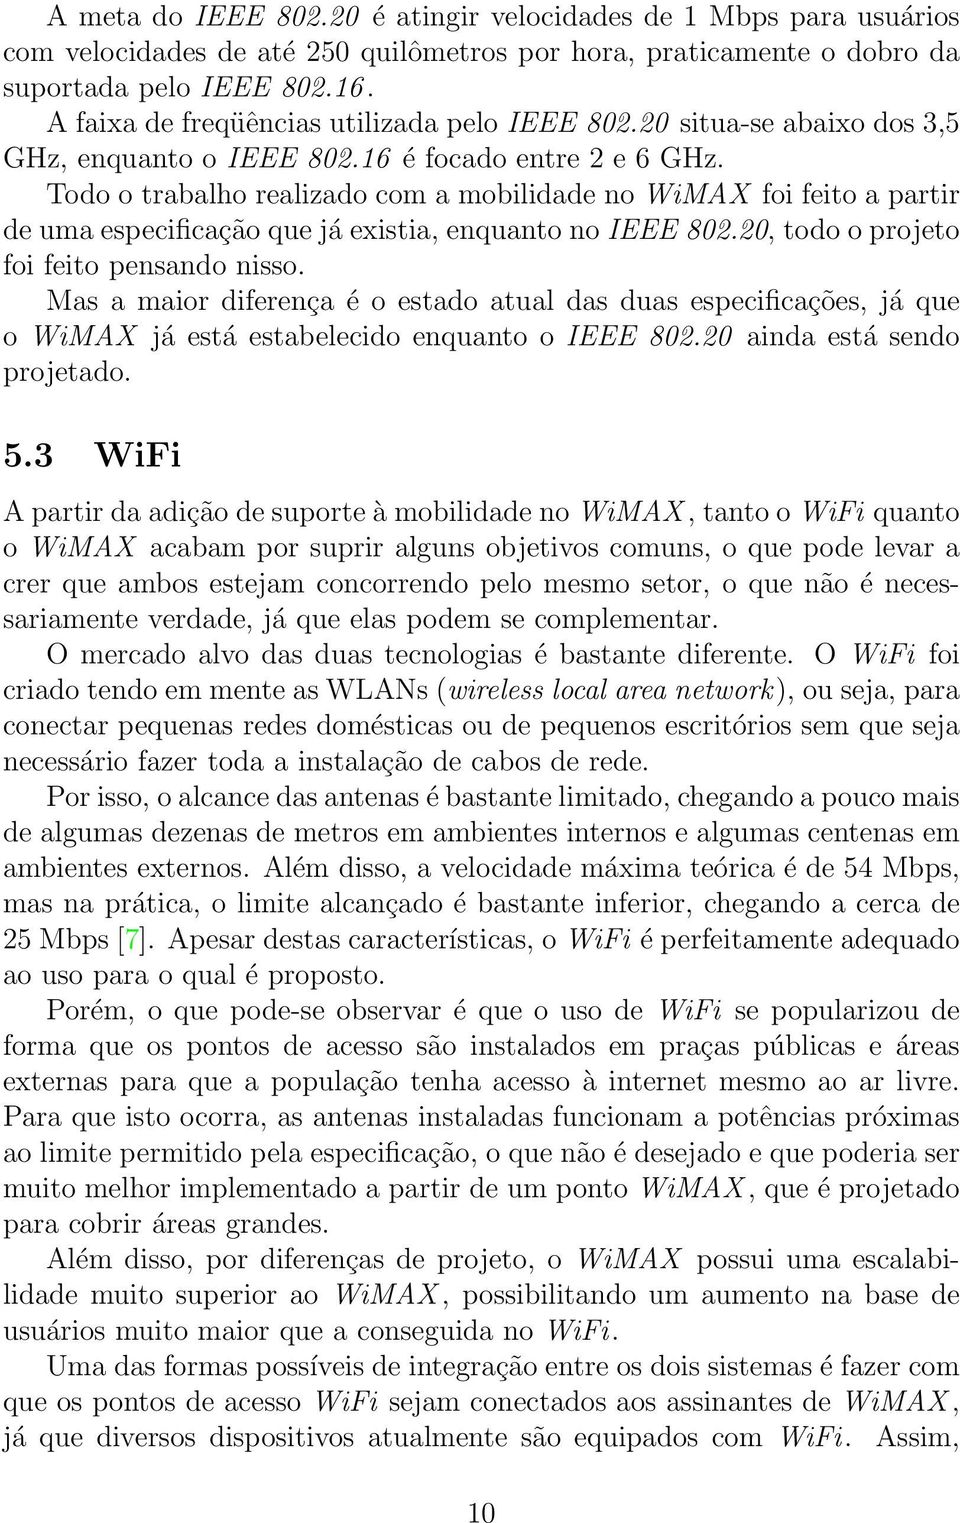 Todo o trabalho realizado com a mobilidade no WiMAX foi feito a partir de uma especificação que já existia, enquanto no IEEE 802.20, todo o projeto foi feito pensando nisso.